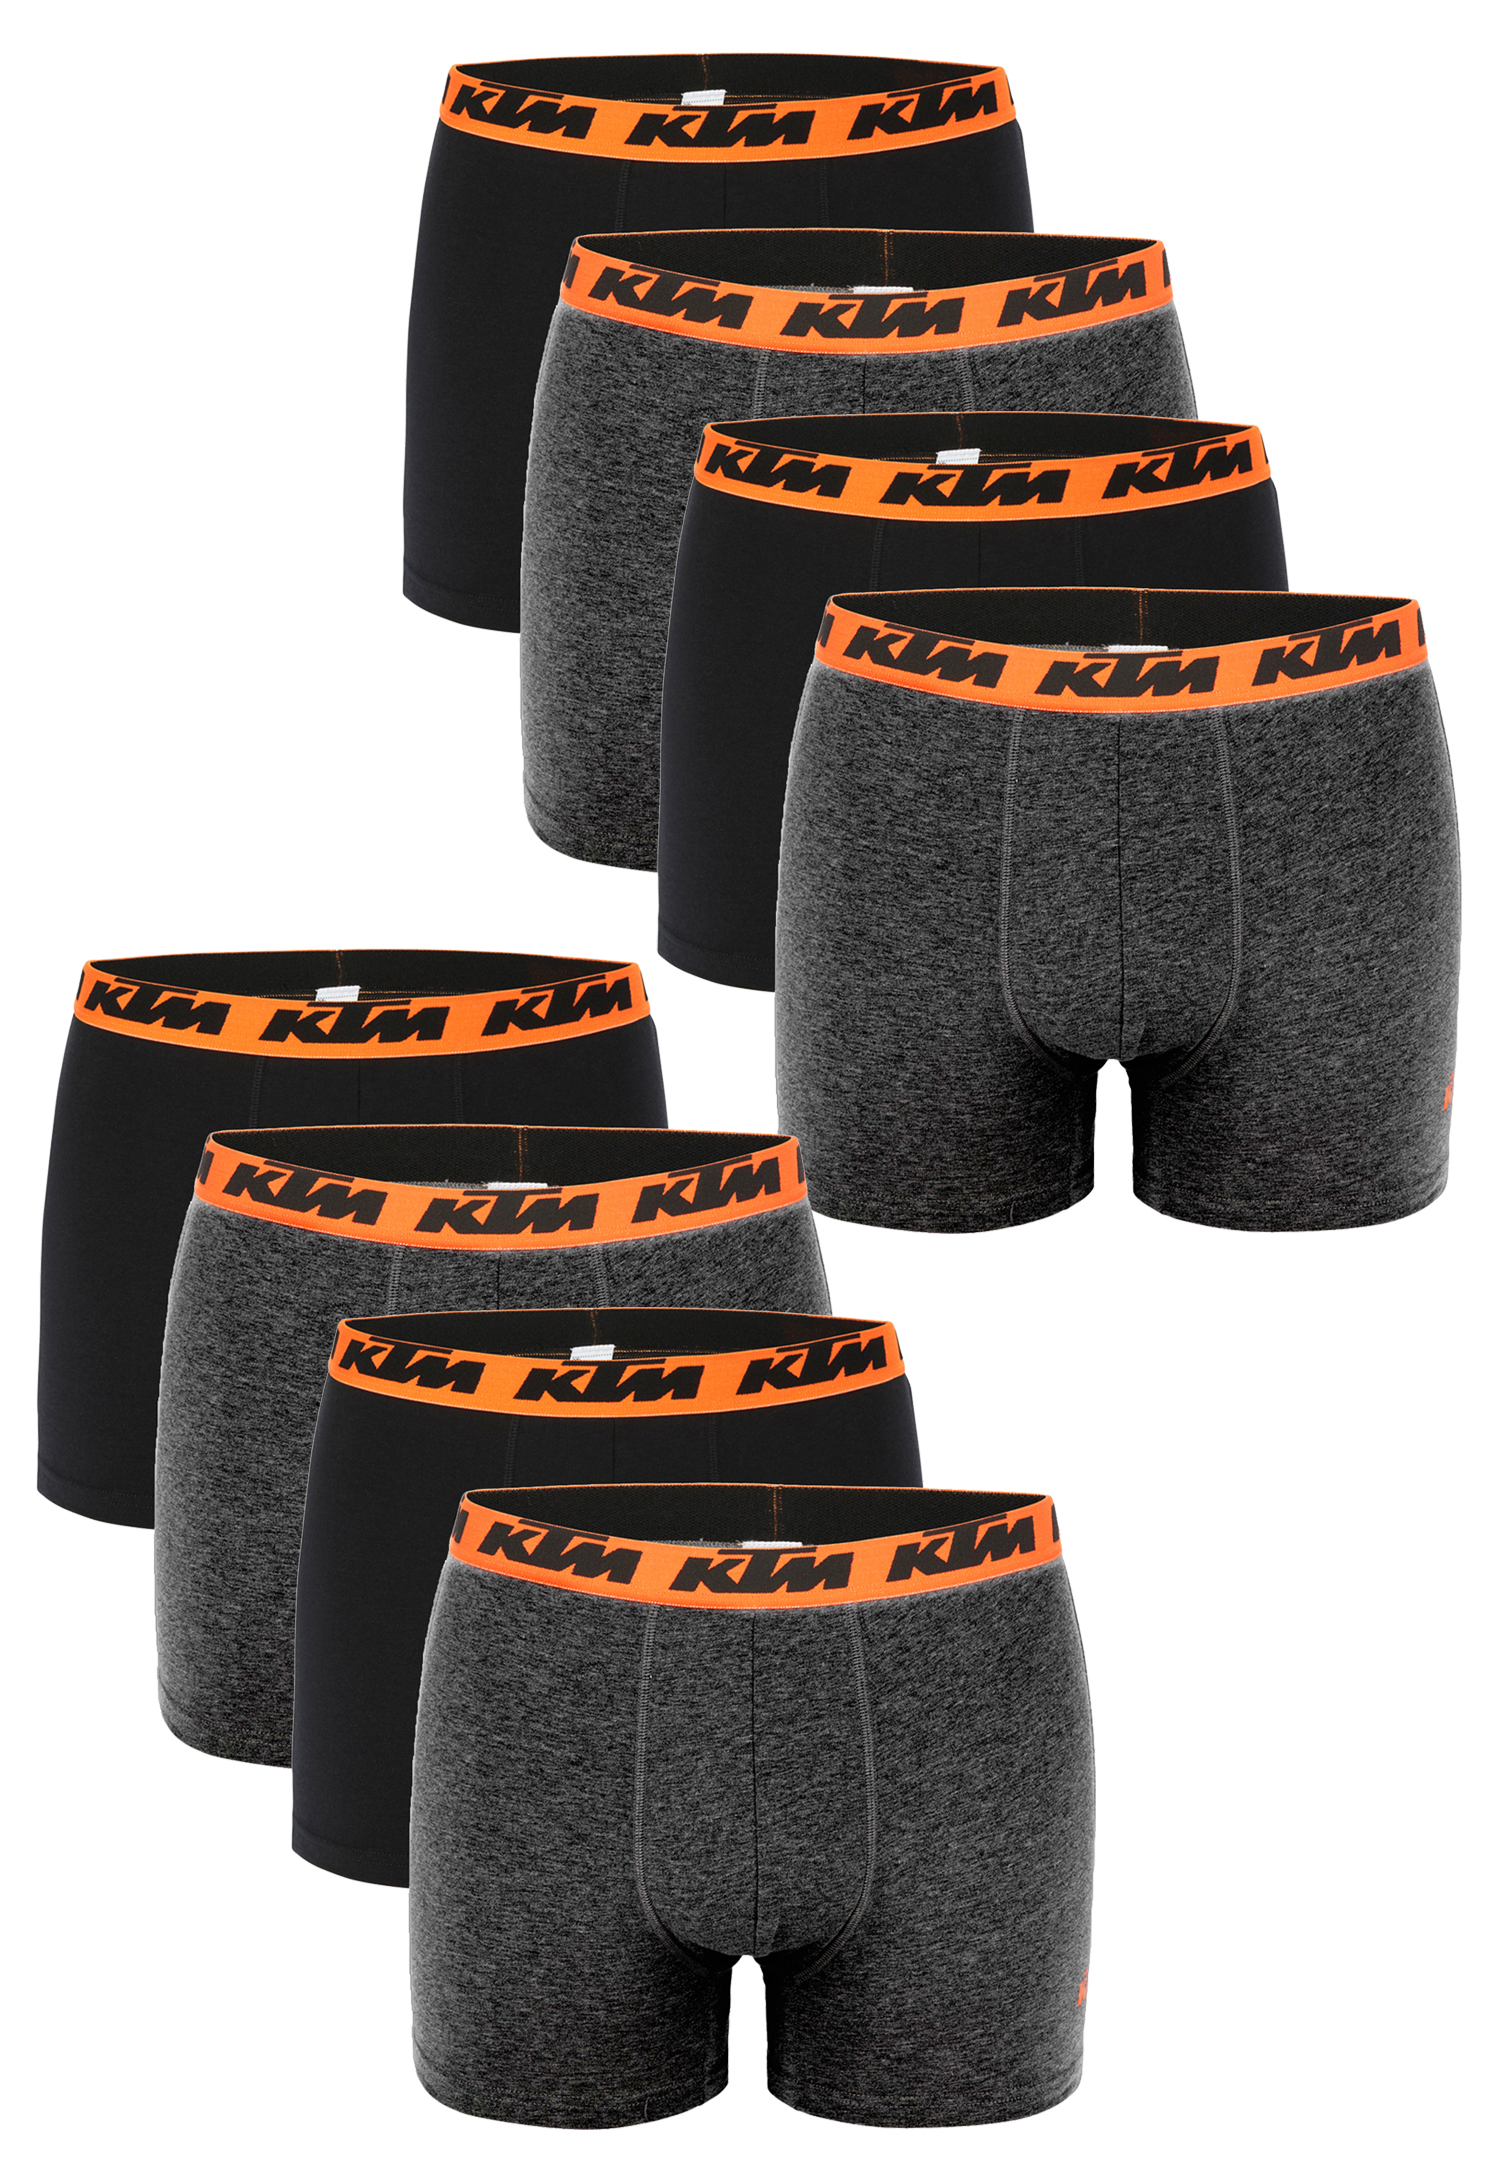 KTM Boxer Men Herren Boxershorts Pant Unterwäsche 6 er Pack, Farbe:Dark Grey / Black2, Bekleidungsgröße:S